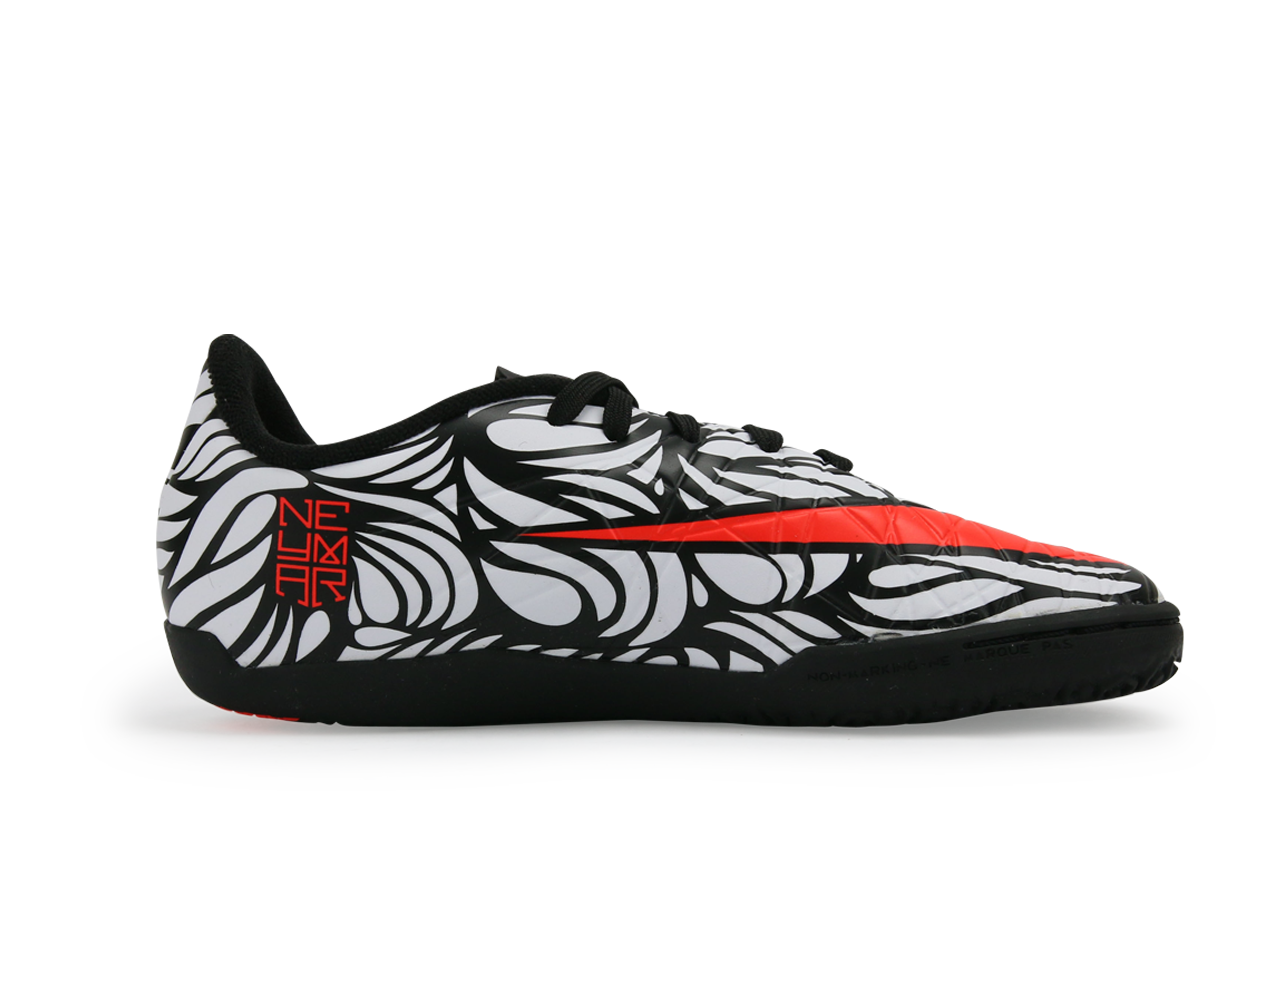 Nike Kids Hypervenom Phelon II NJR Indoor Soccer Shoes Black/Bright Crimson/White